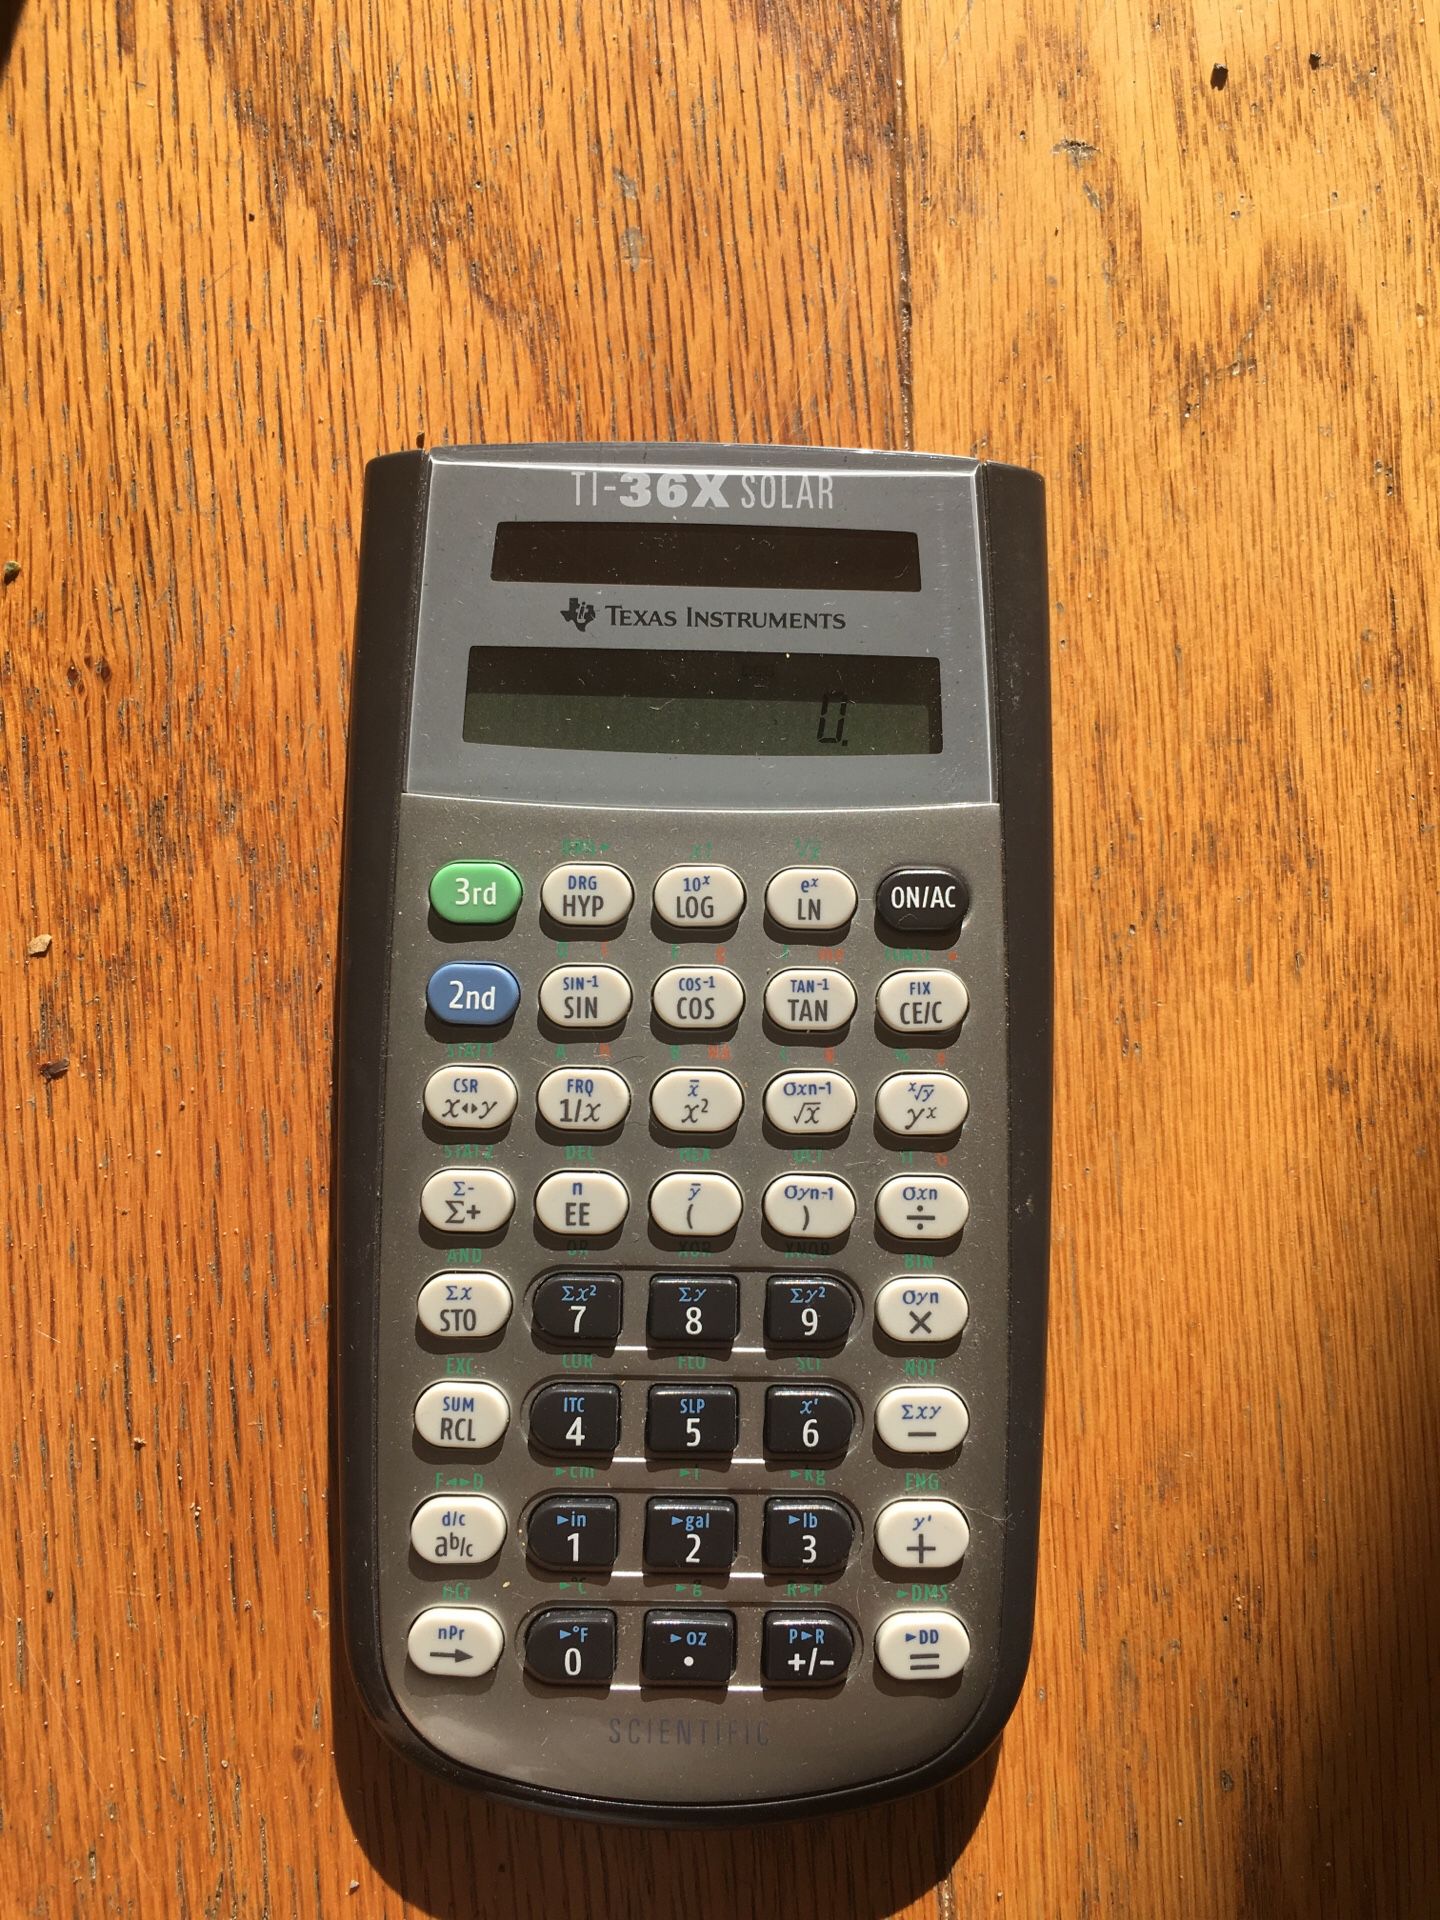 TI 36x solar scientific calculator